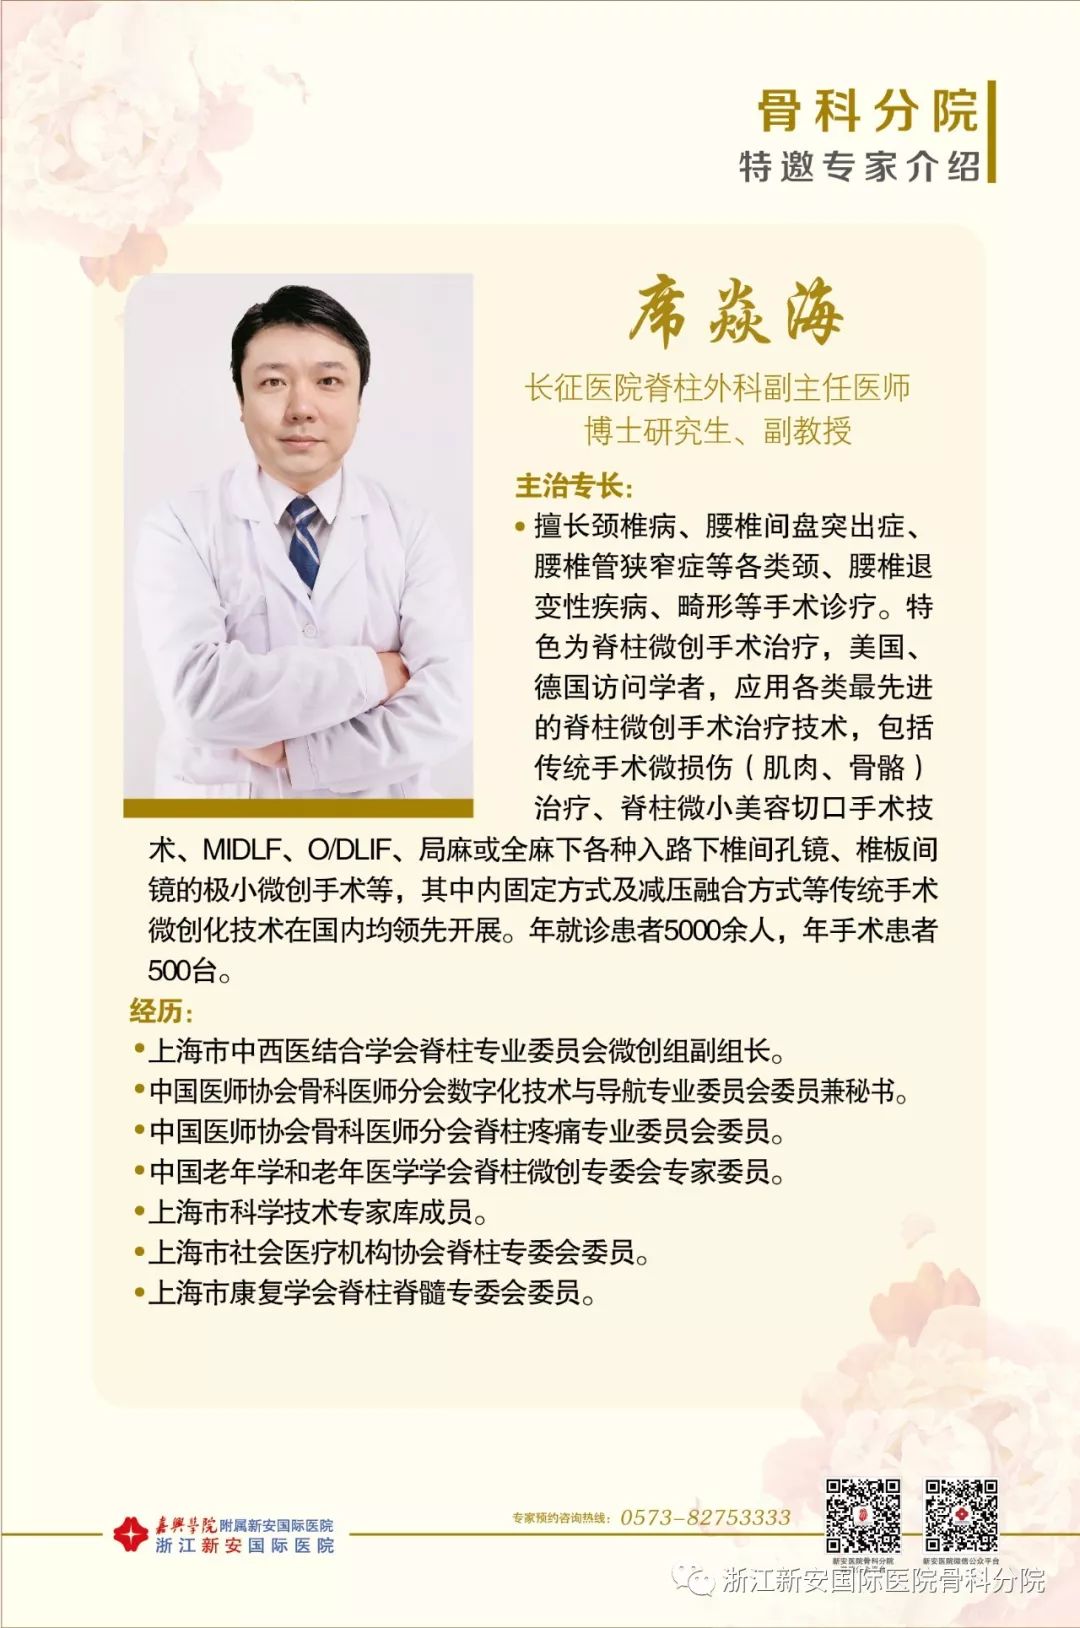 上海长征医院脊柱外科作为医院影响力最大科室,1995年被确定为上海市